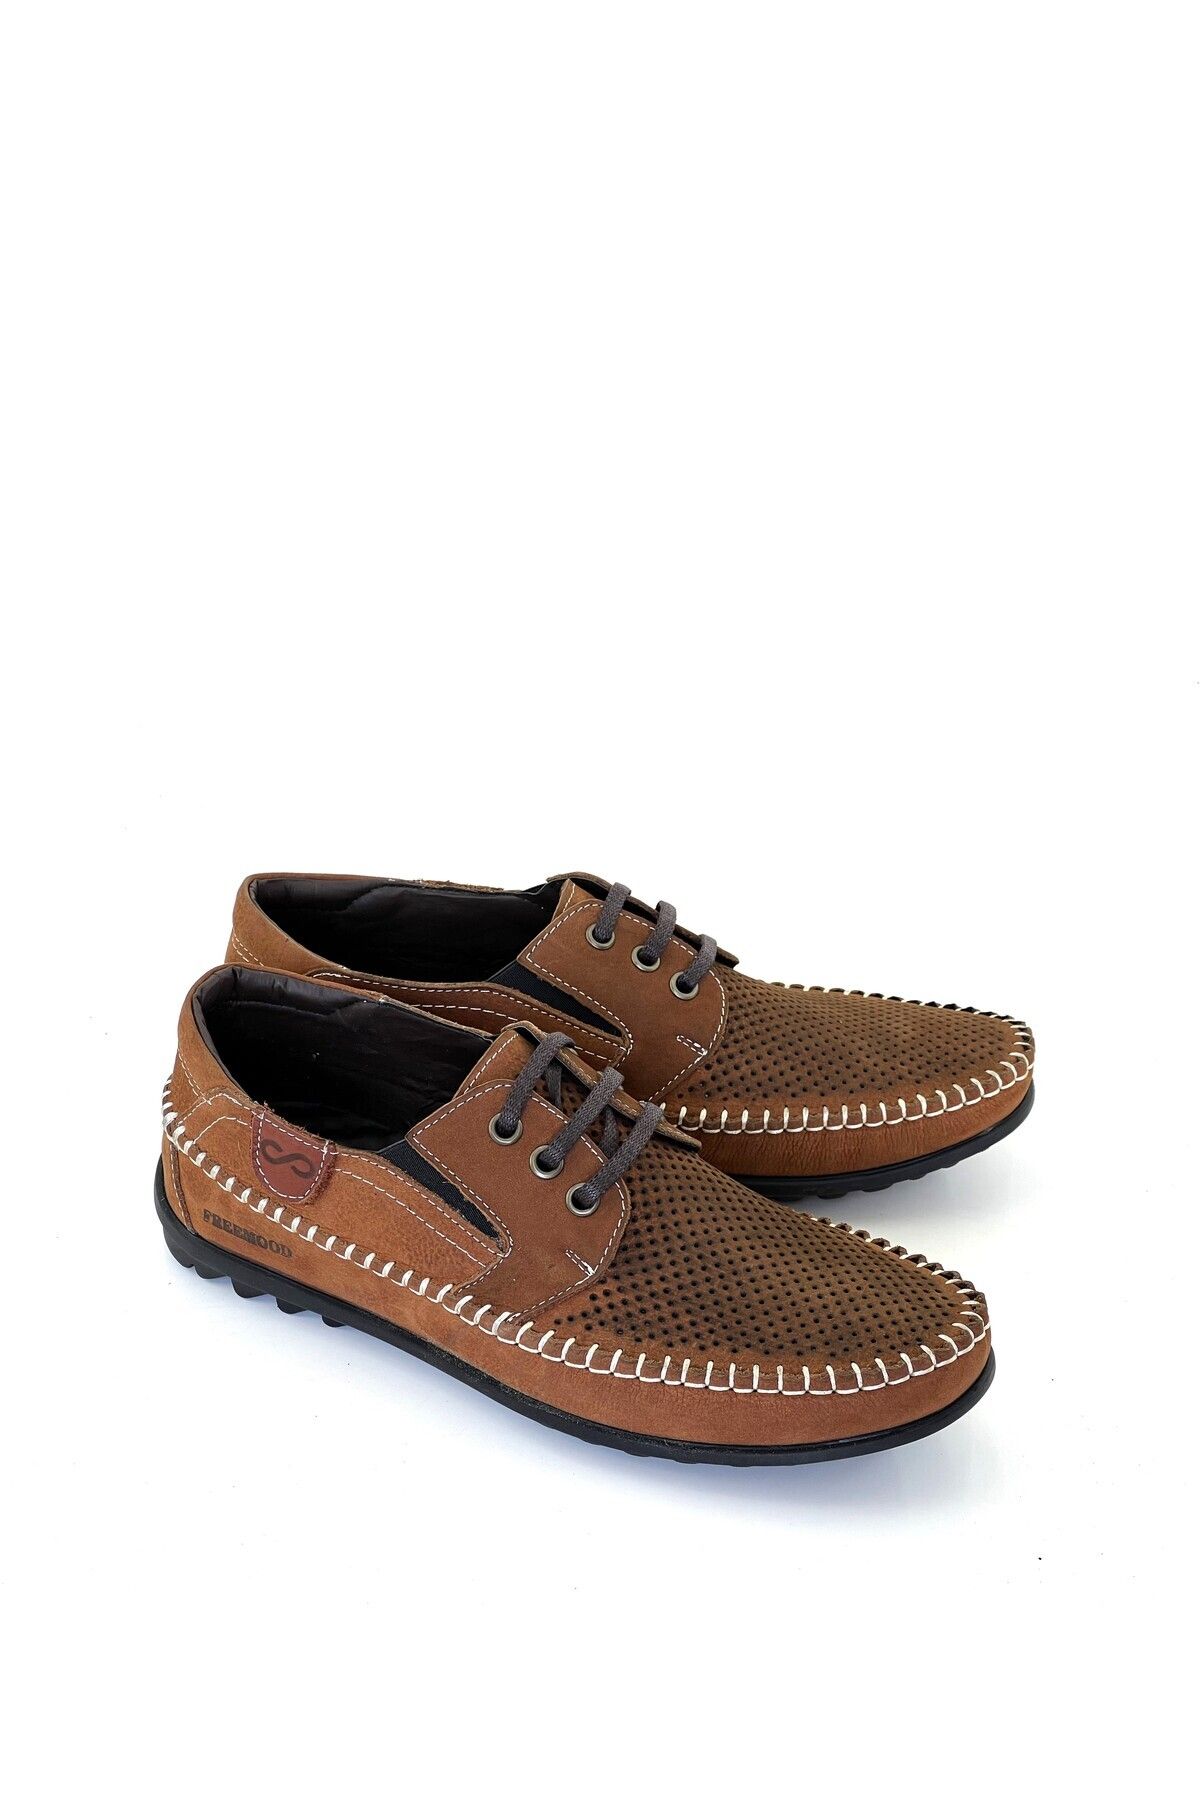 grado Hakiki Deri Erkek Yazlık Delikli Confort Loafer Ayakkabı Taba Rengi 4100